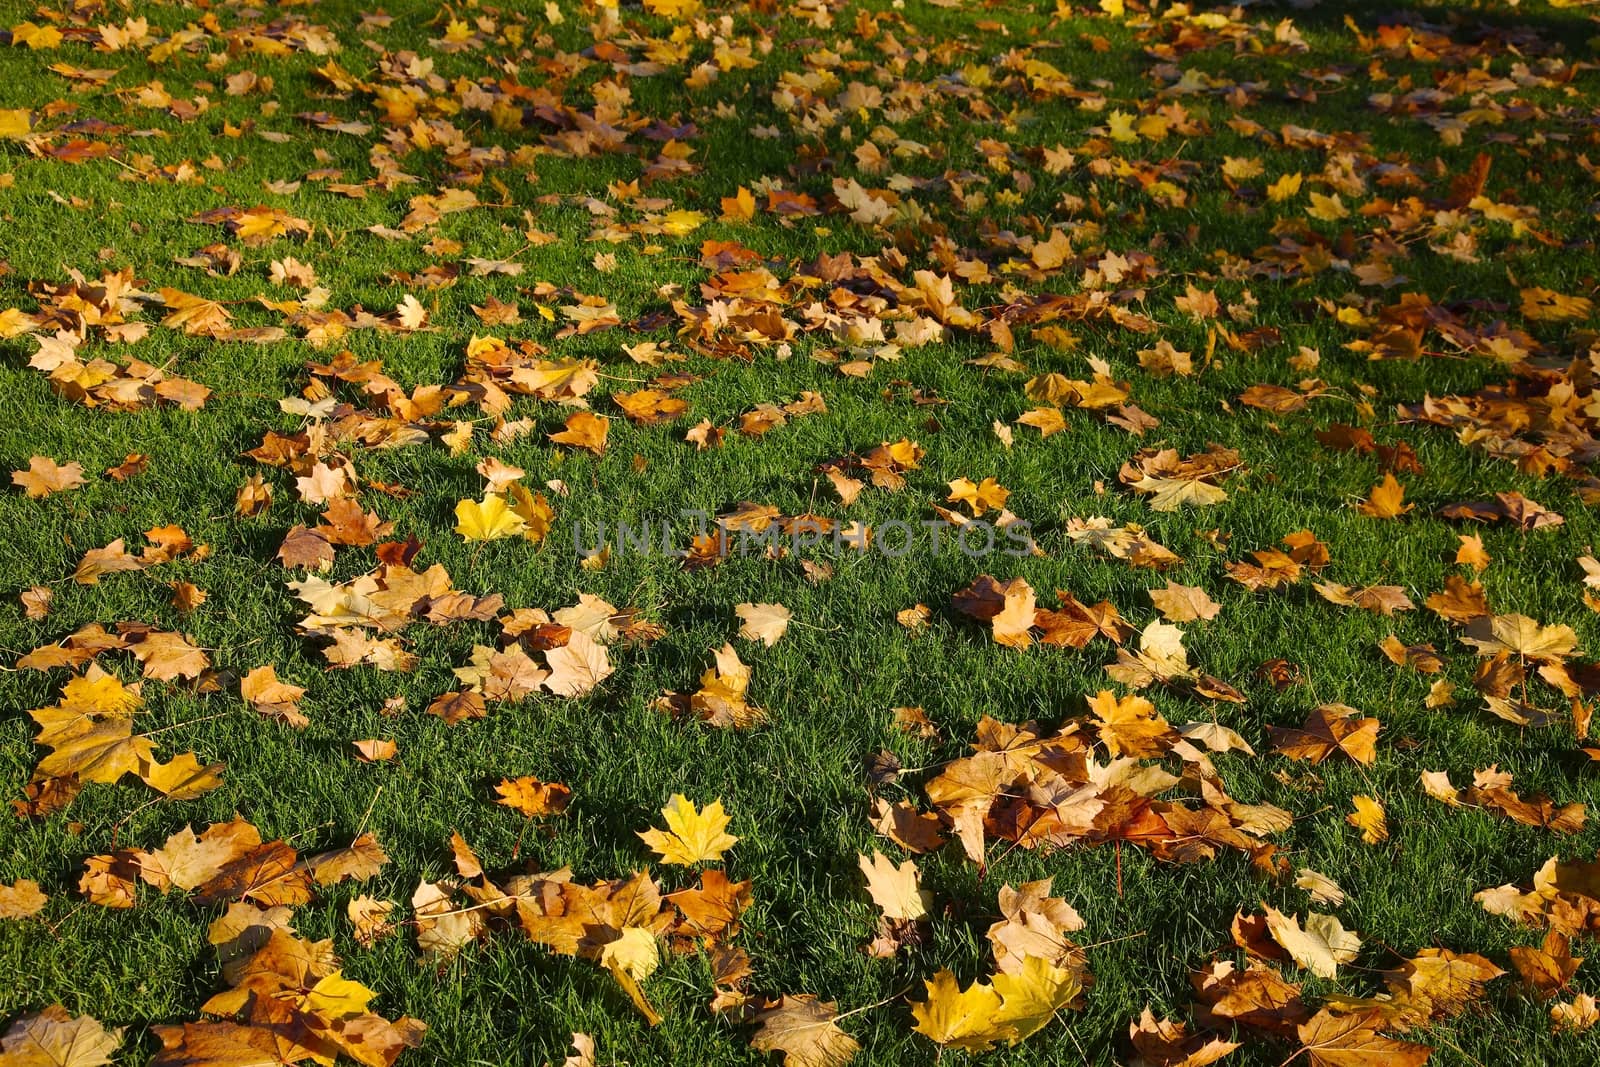 Fallen leaves by Gudella